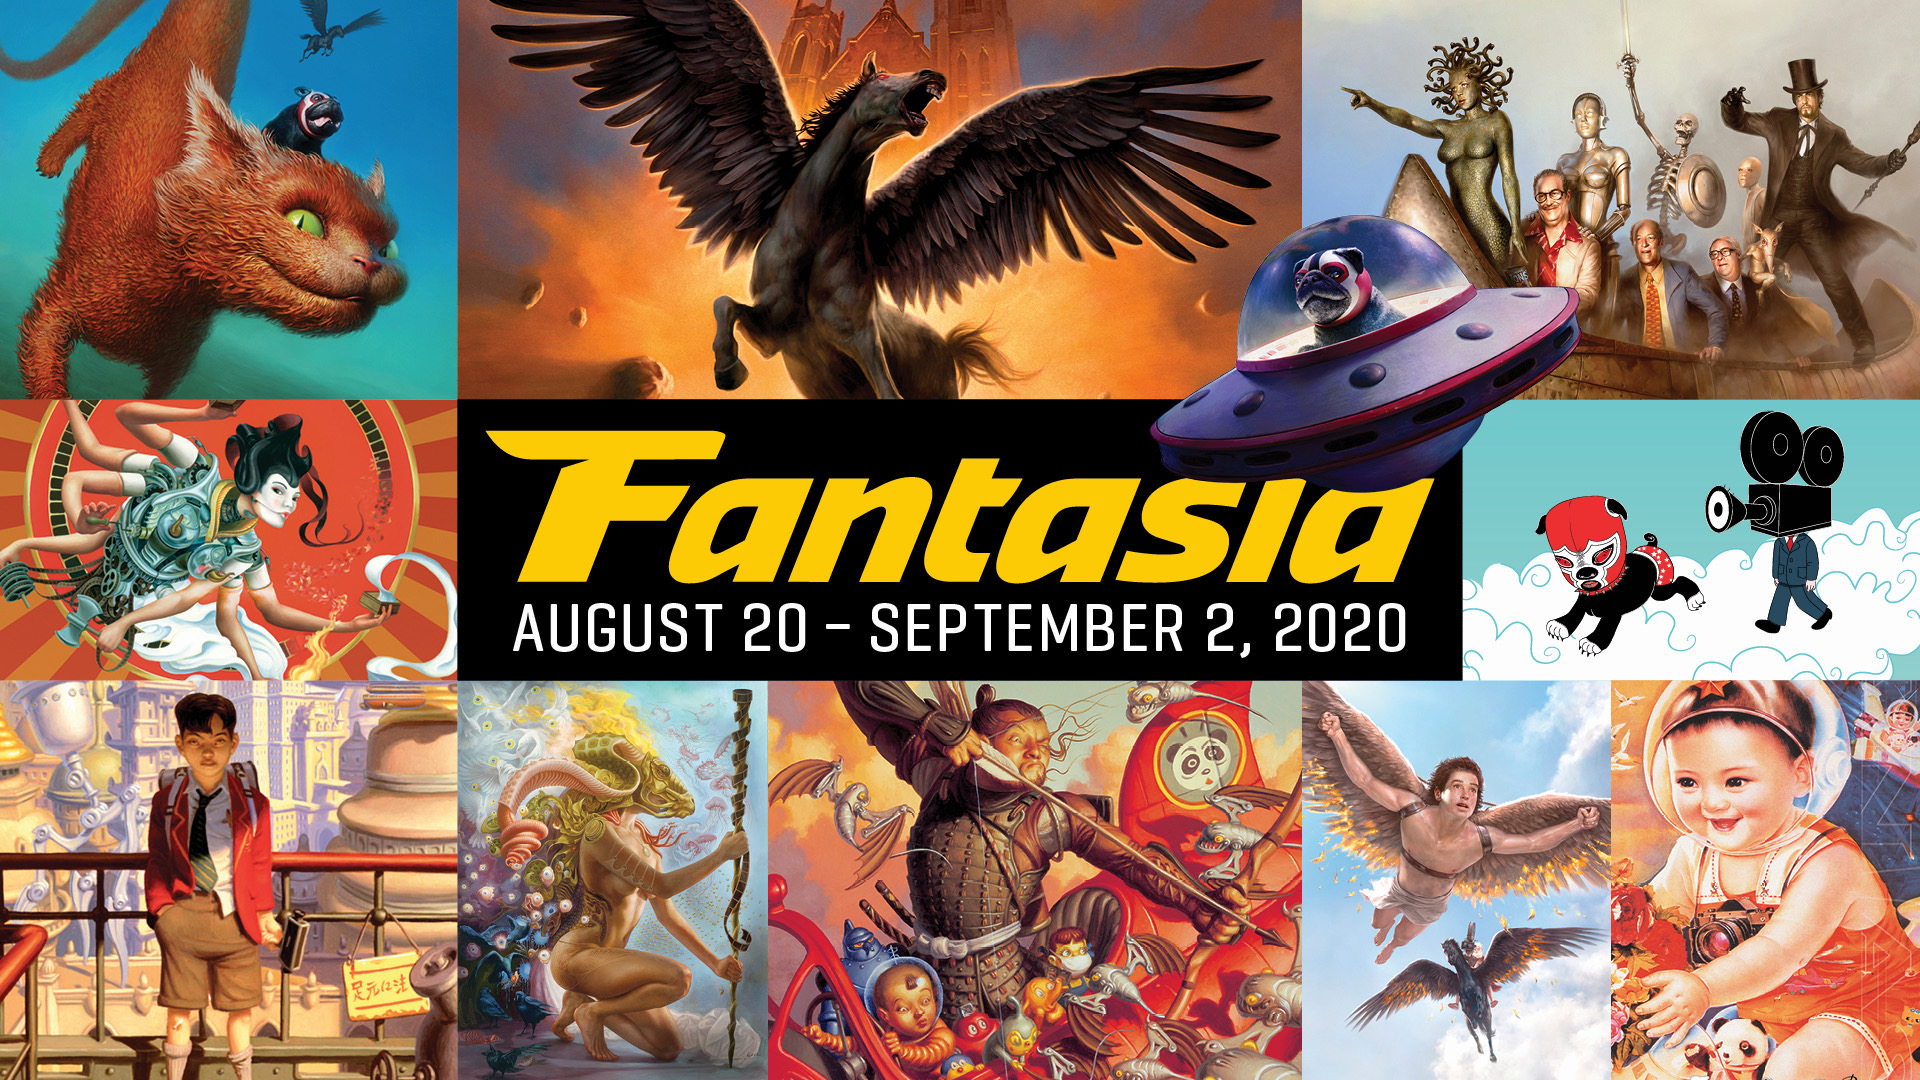 Fantasia 2020